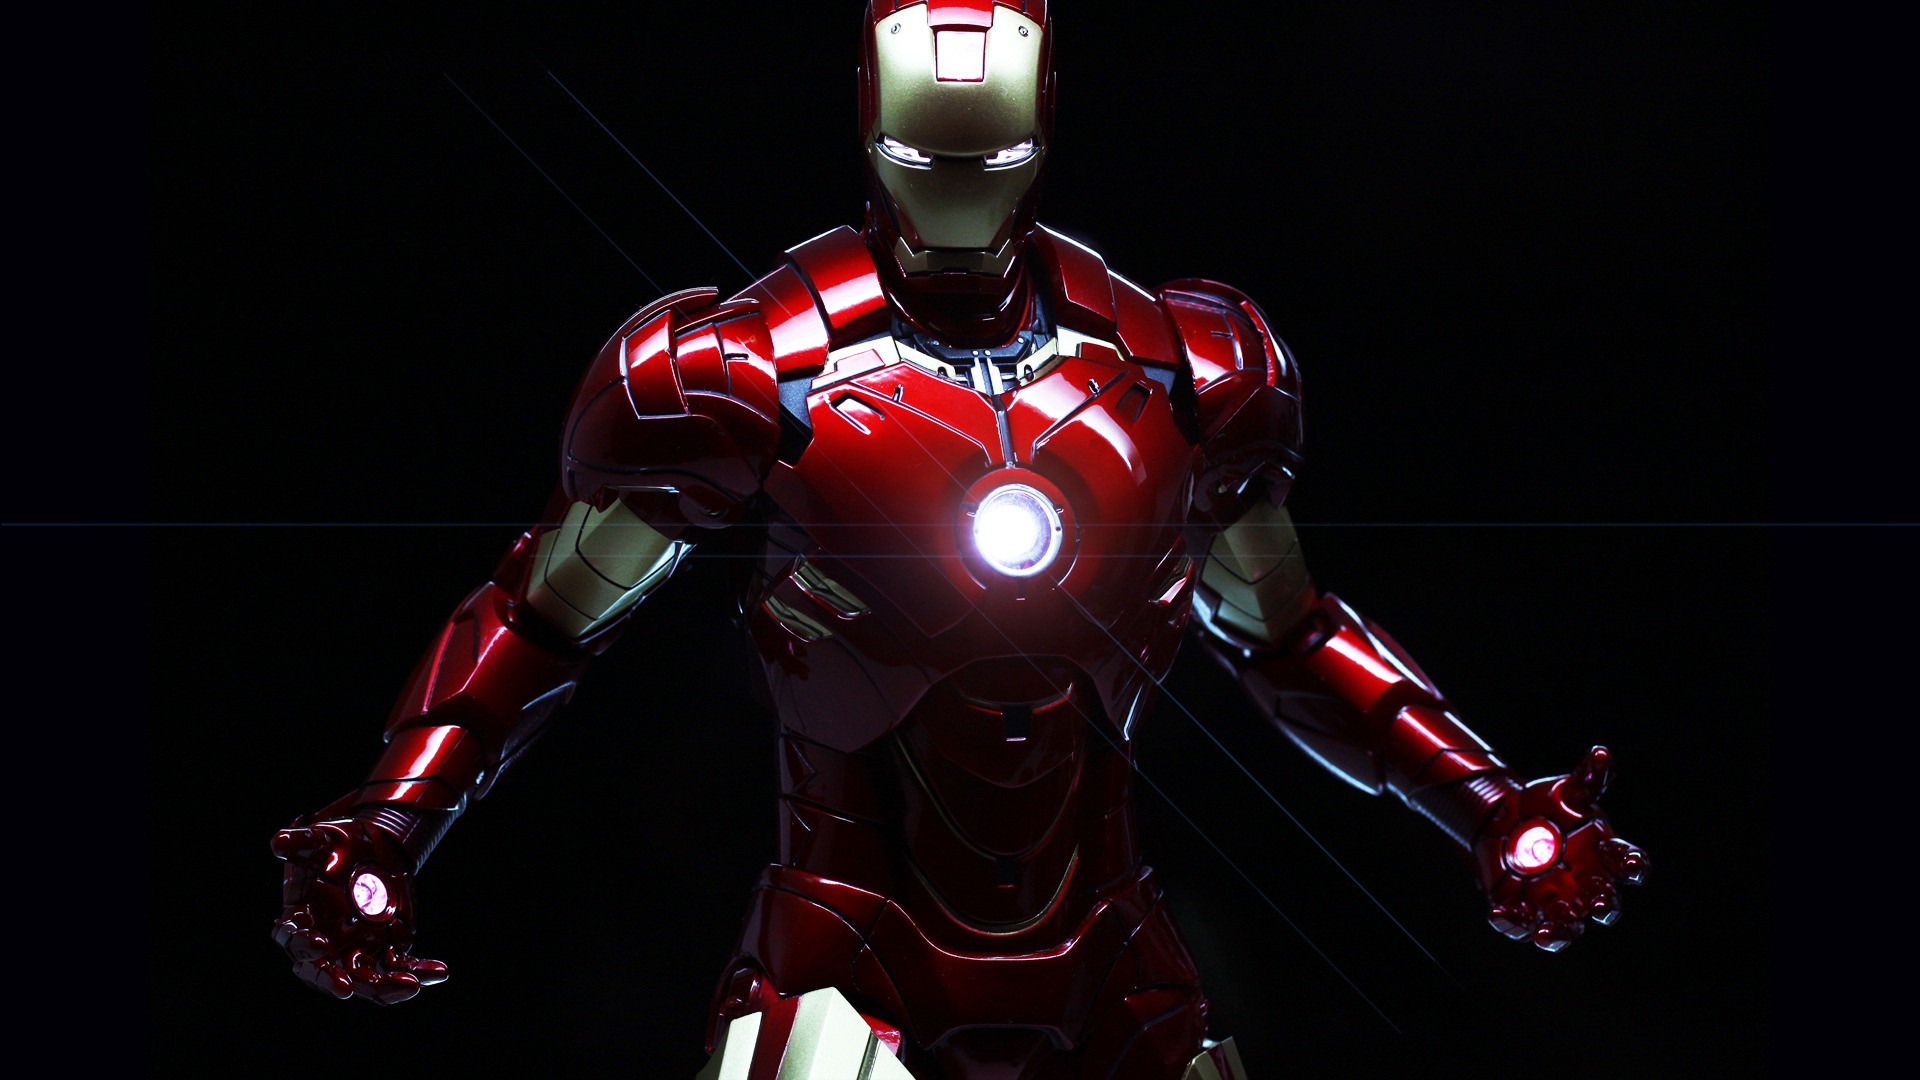 Lạc vào thế giới Iron Man fantasy đầy mơ mộng và sáng tạo, nơi mà sức mạnh không giới hạn và những cuộc chiến đầy kịch tính xảy ra. Hãy để tài năng của chúng tôi đưa bạn một chuyến phiêu lưu đầy cảm xúc với Iron Man fantasy!